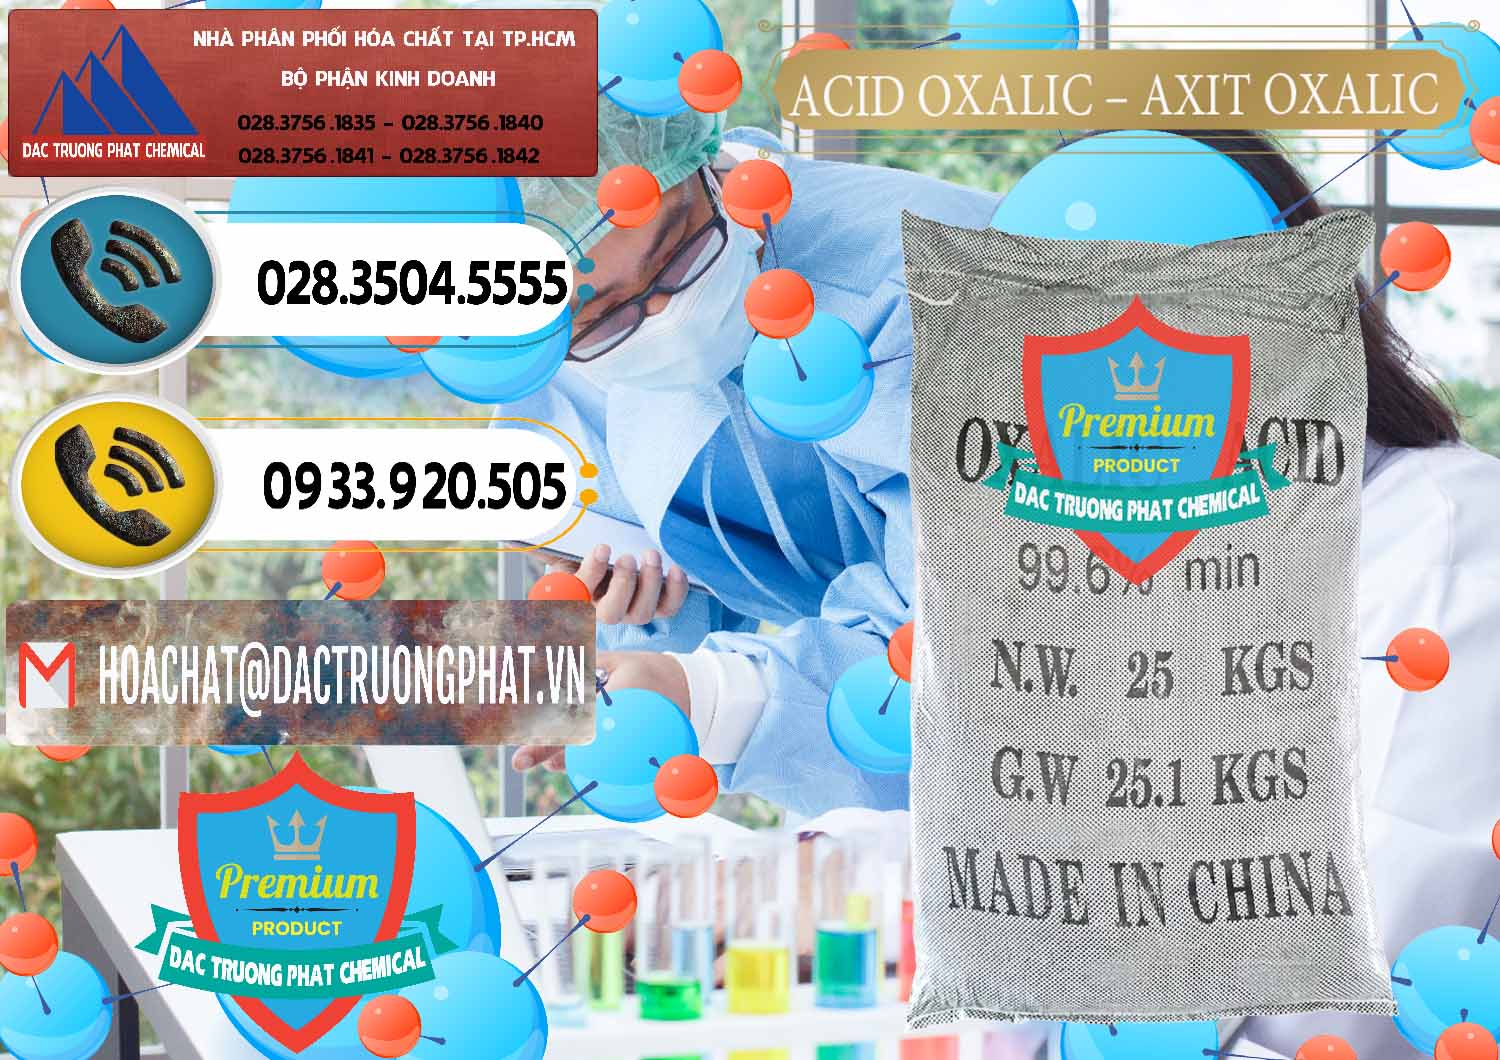 Nhà cung cấp & bán Acid Oxalic – Axit Oxalic 99.6% Trung Quốc China - 0014 - Phân phối và nhập khẩu hóa chất tại TP.HCM - hoachatdetnhuom.vn